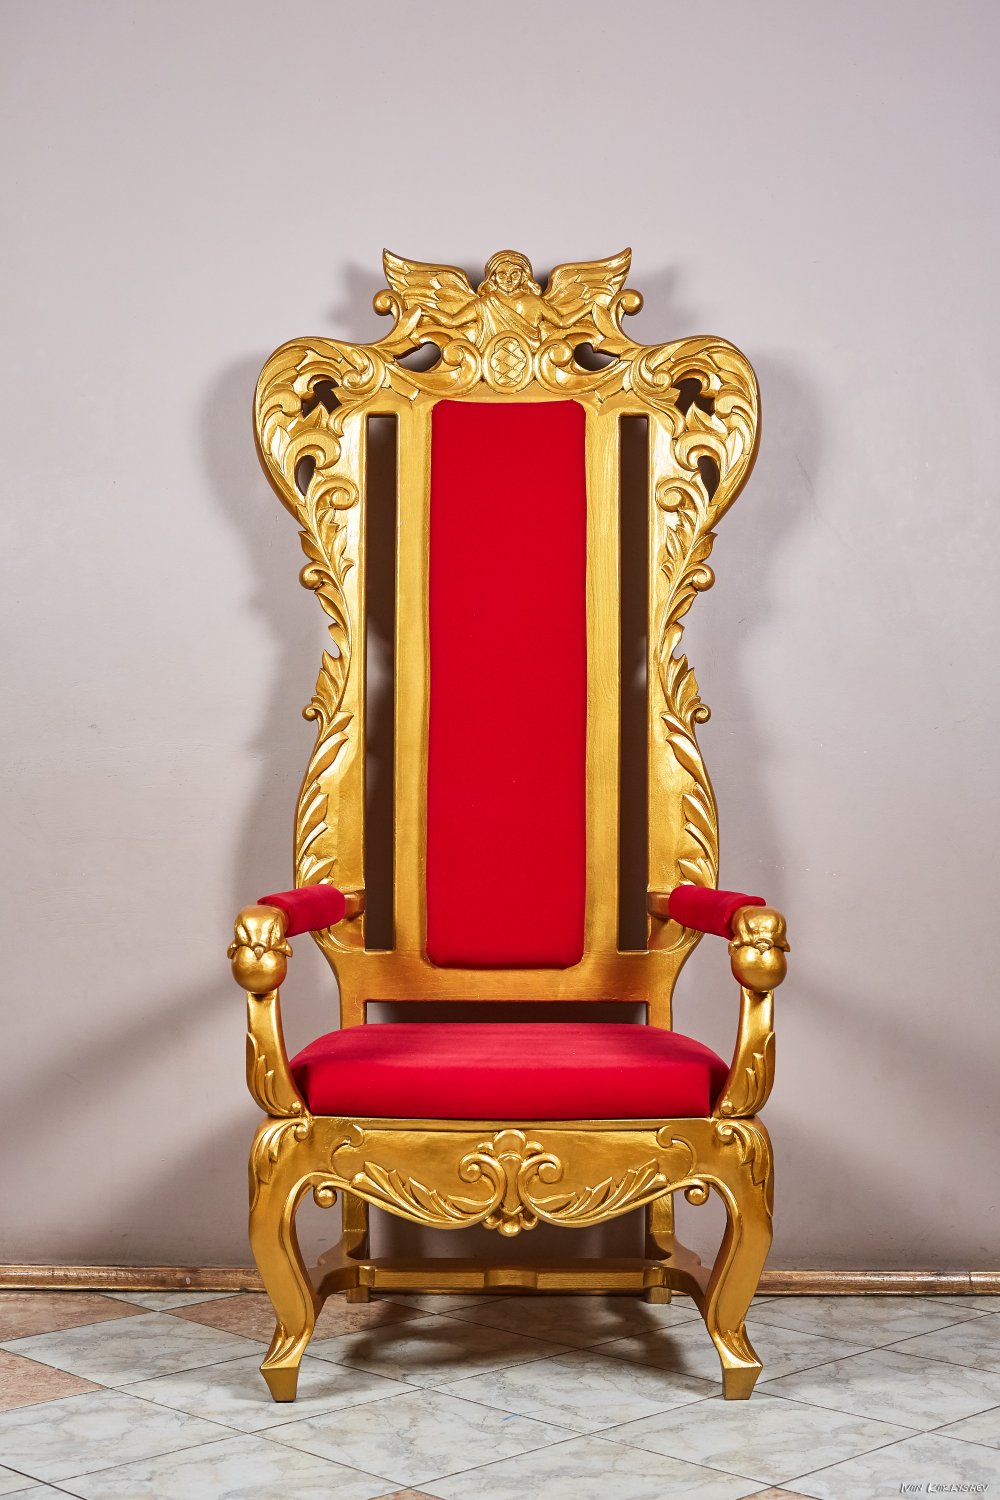 Как сделать Королевский трон из Лего Дом и быт. Пошаговая инструкция по сборке, детали